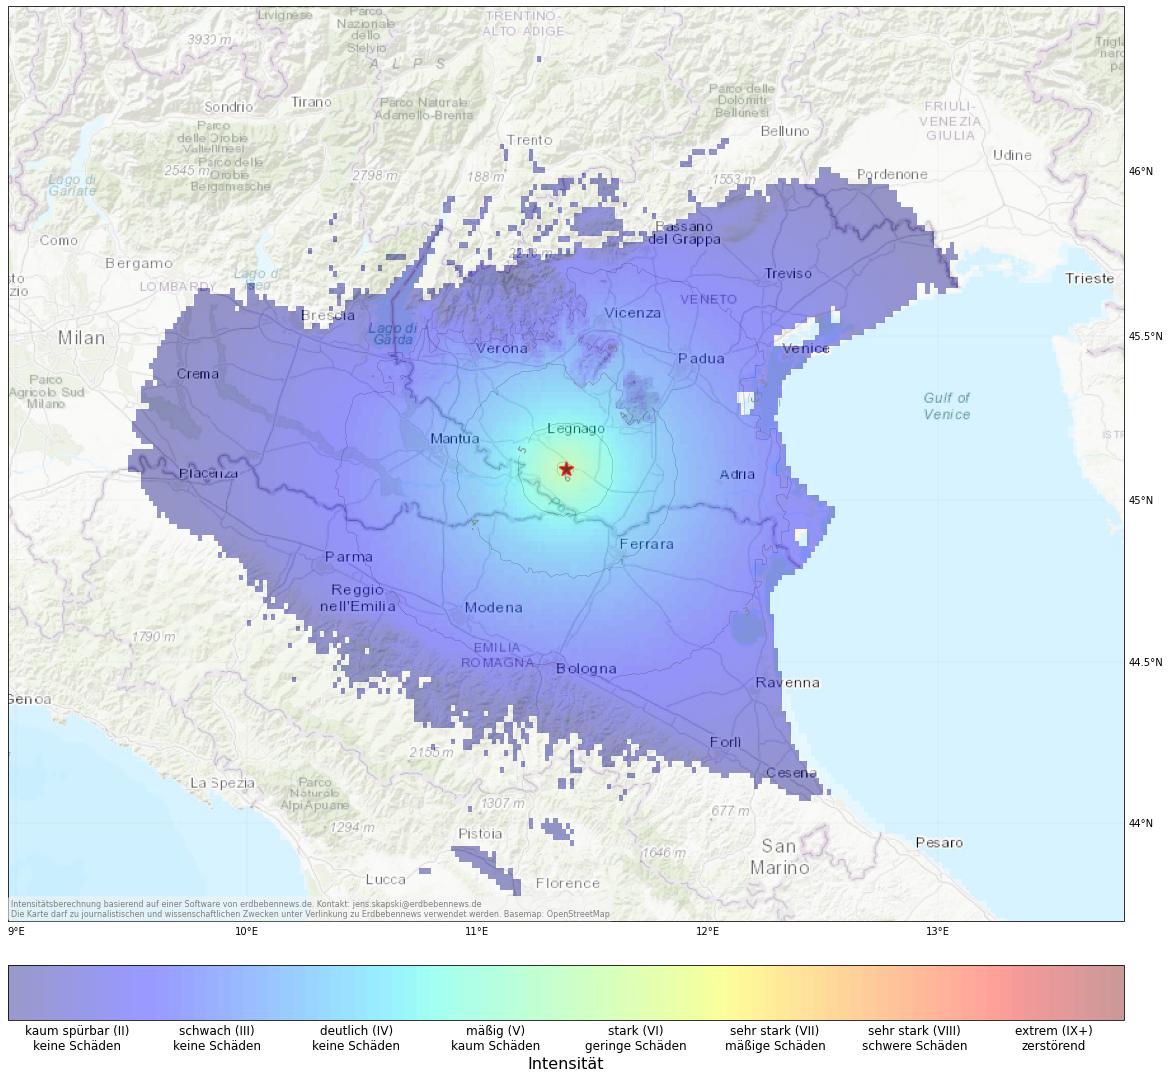 Berechnete Intensität (ShakeMap) des Erdbebens der Stärke 4.3 am 25. Oktober, 15:45 Uhr in Italien